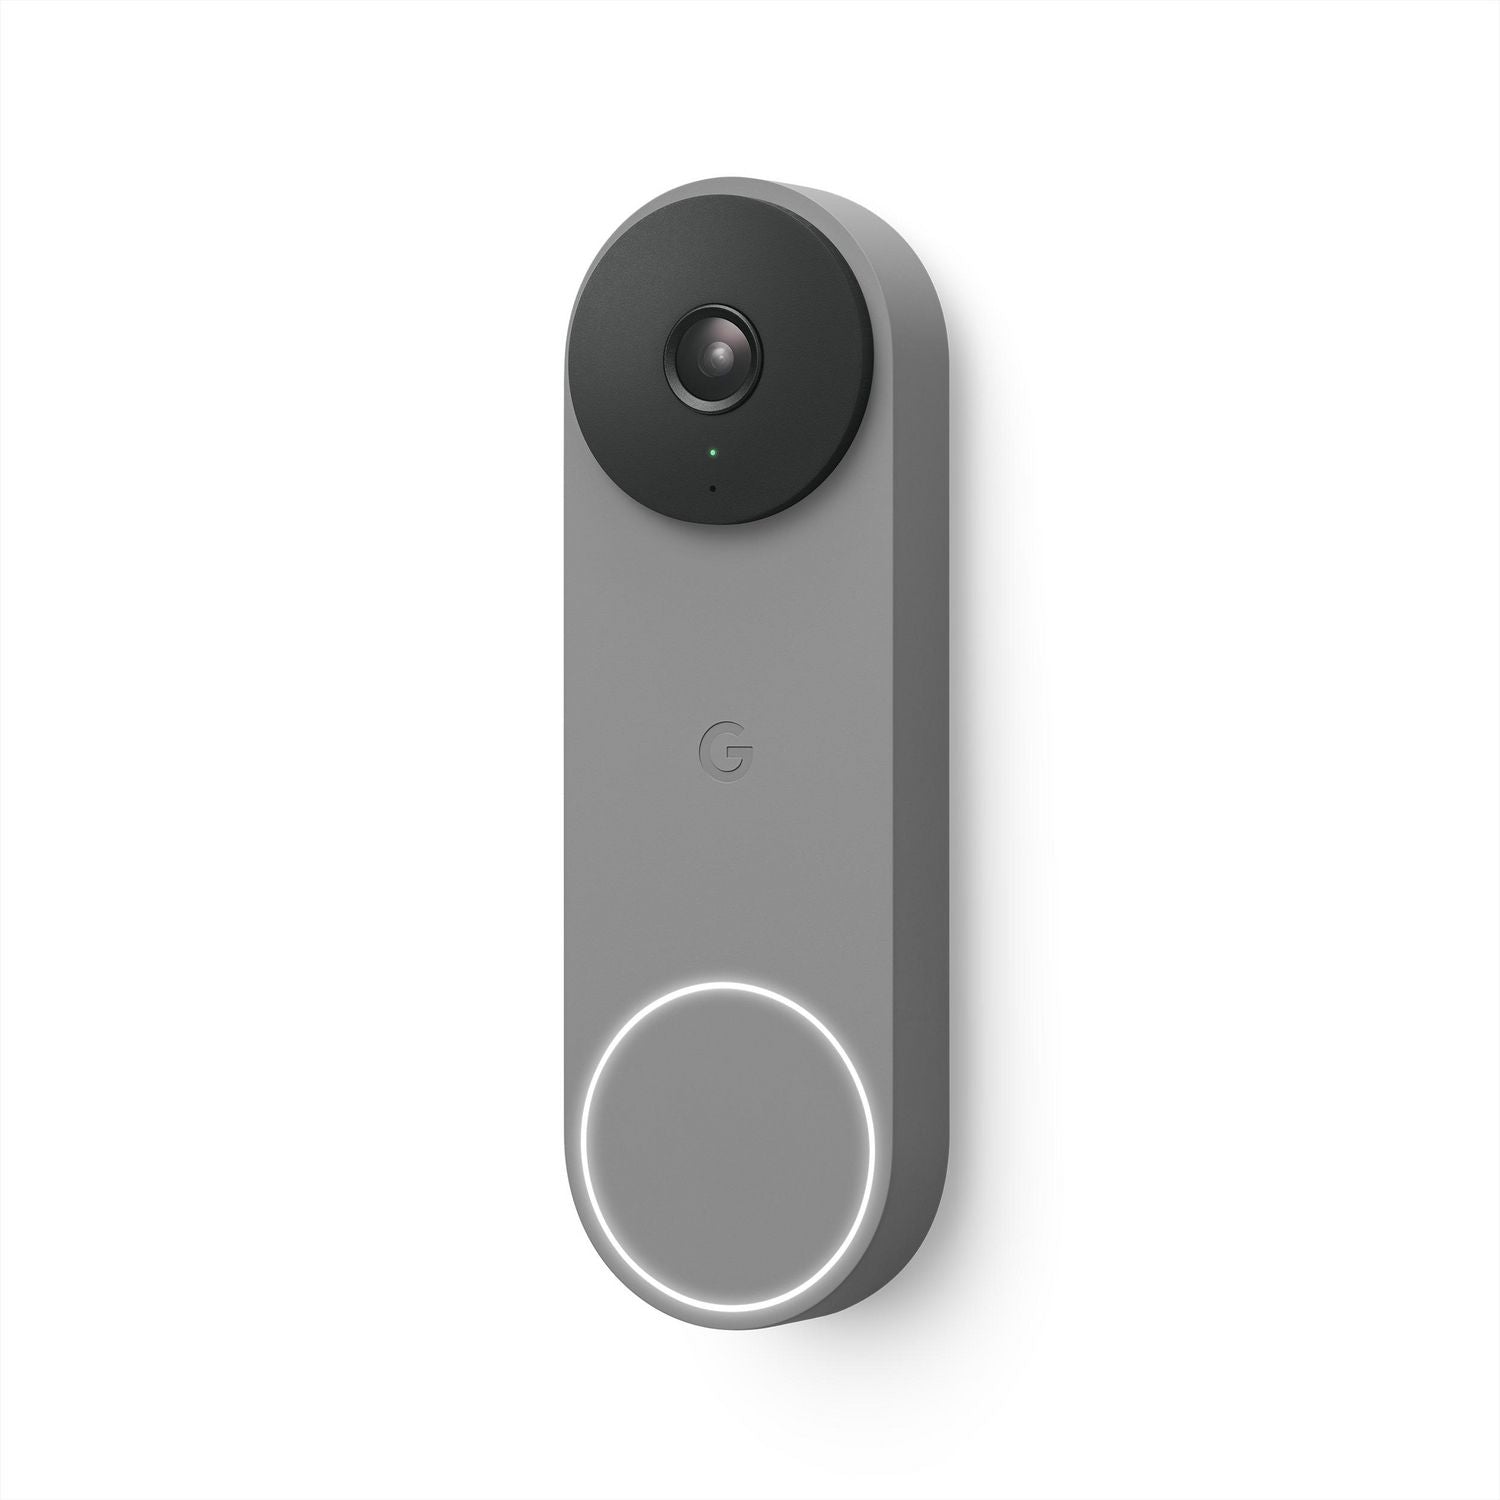 Google 2nd Gen Nest Doorbell (Wired) - Ash